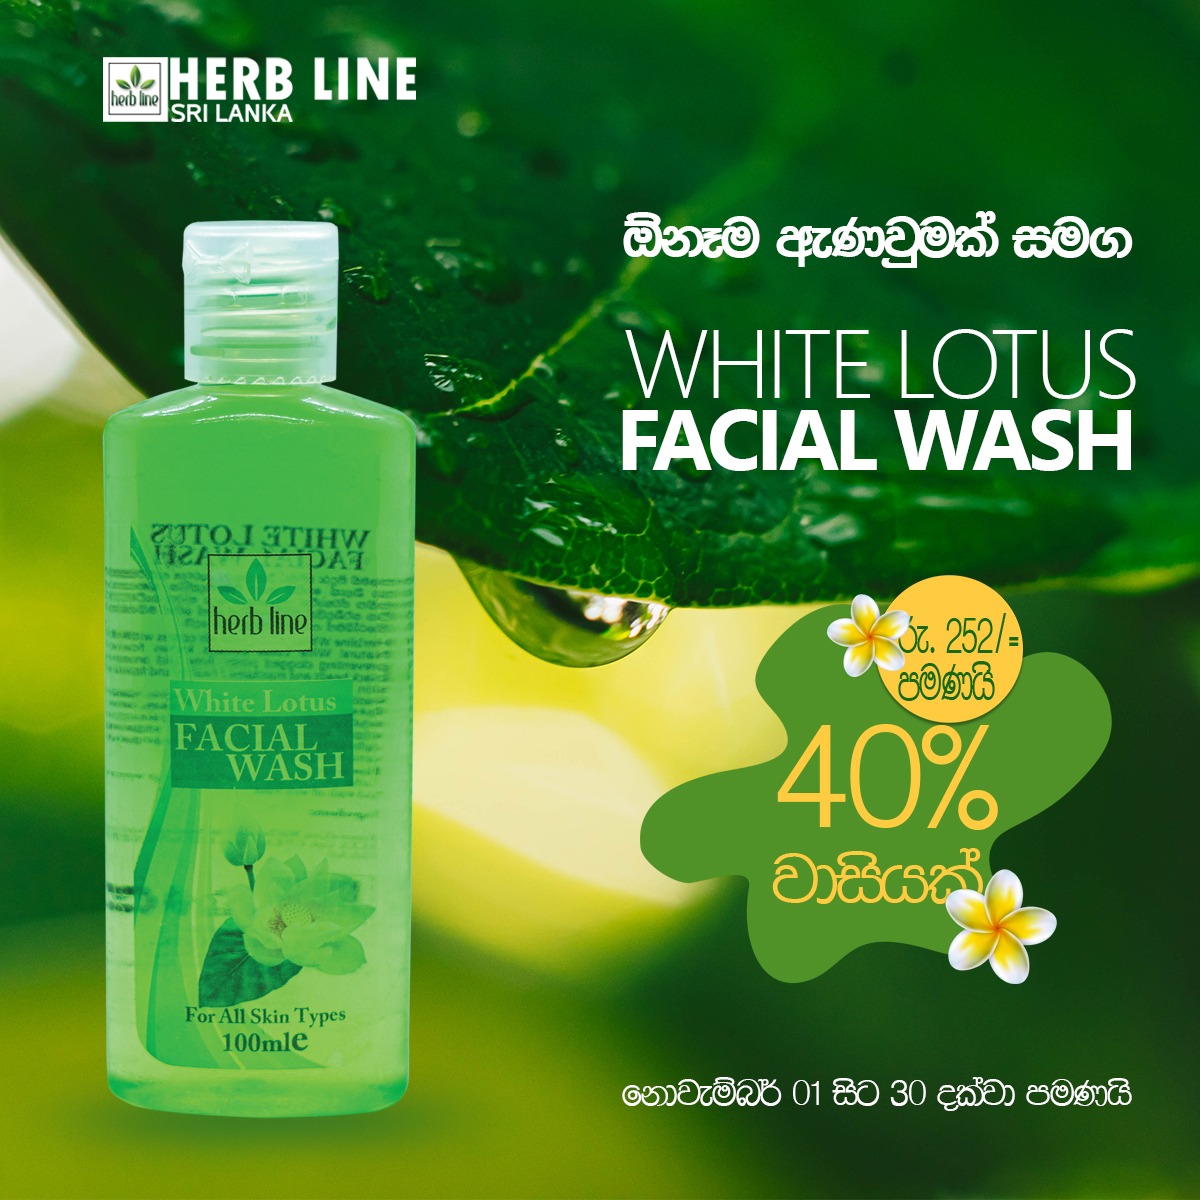 White Lotus Facial Wash Offer